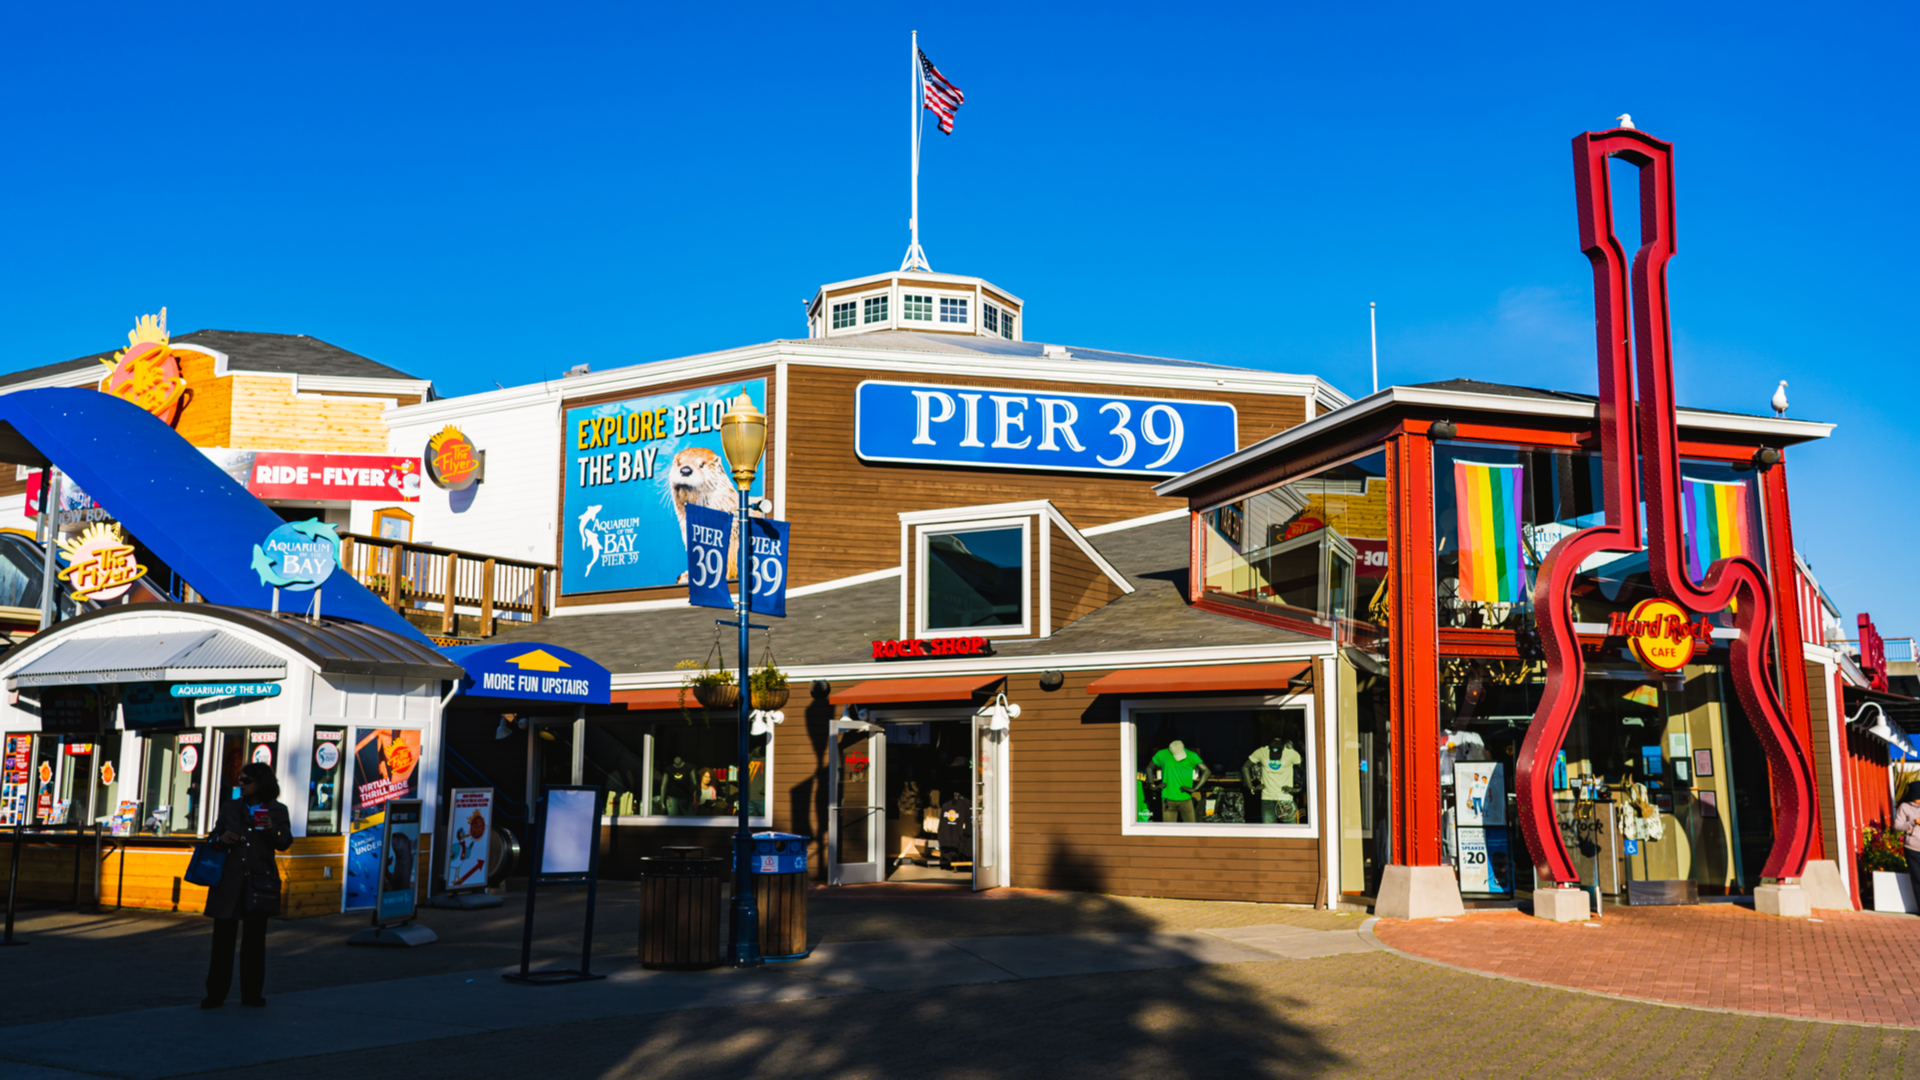 O que fazer em San Francisco: pontos turísticos e passeios | Pier 39 | Conexão123